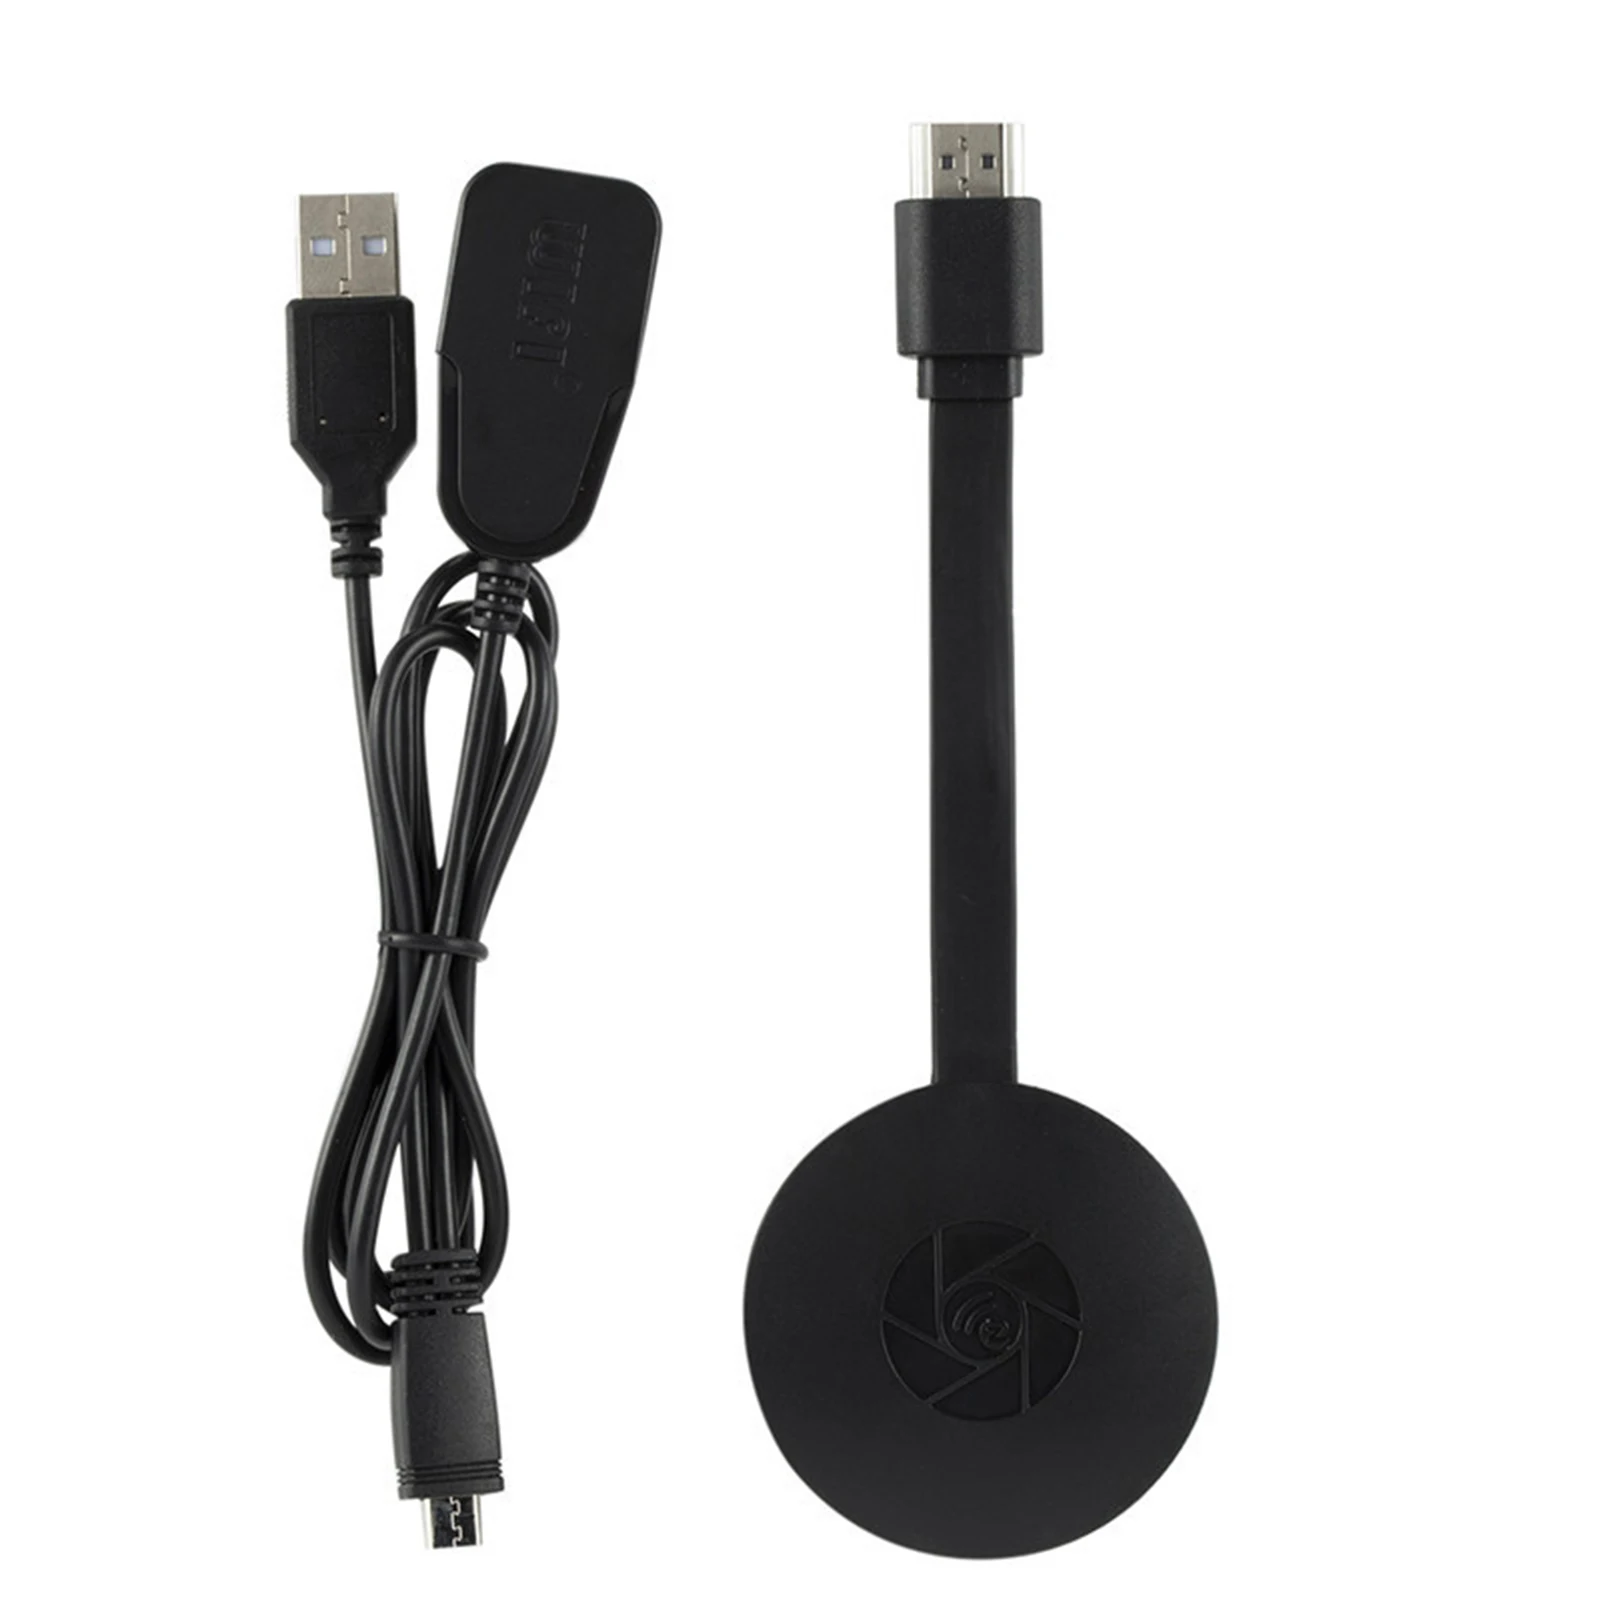 

Беспроводной Смартфон HDMI-совместимый модем Plug and Play с мощной поддержкой 1080P для Android 4 2 iOS 7 0 Windows 8 1